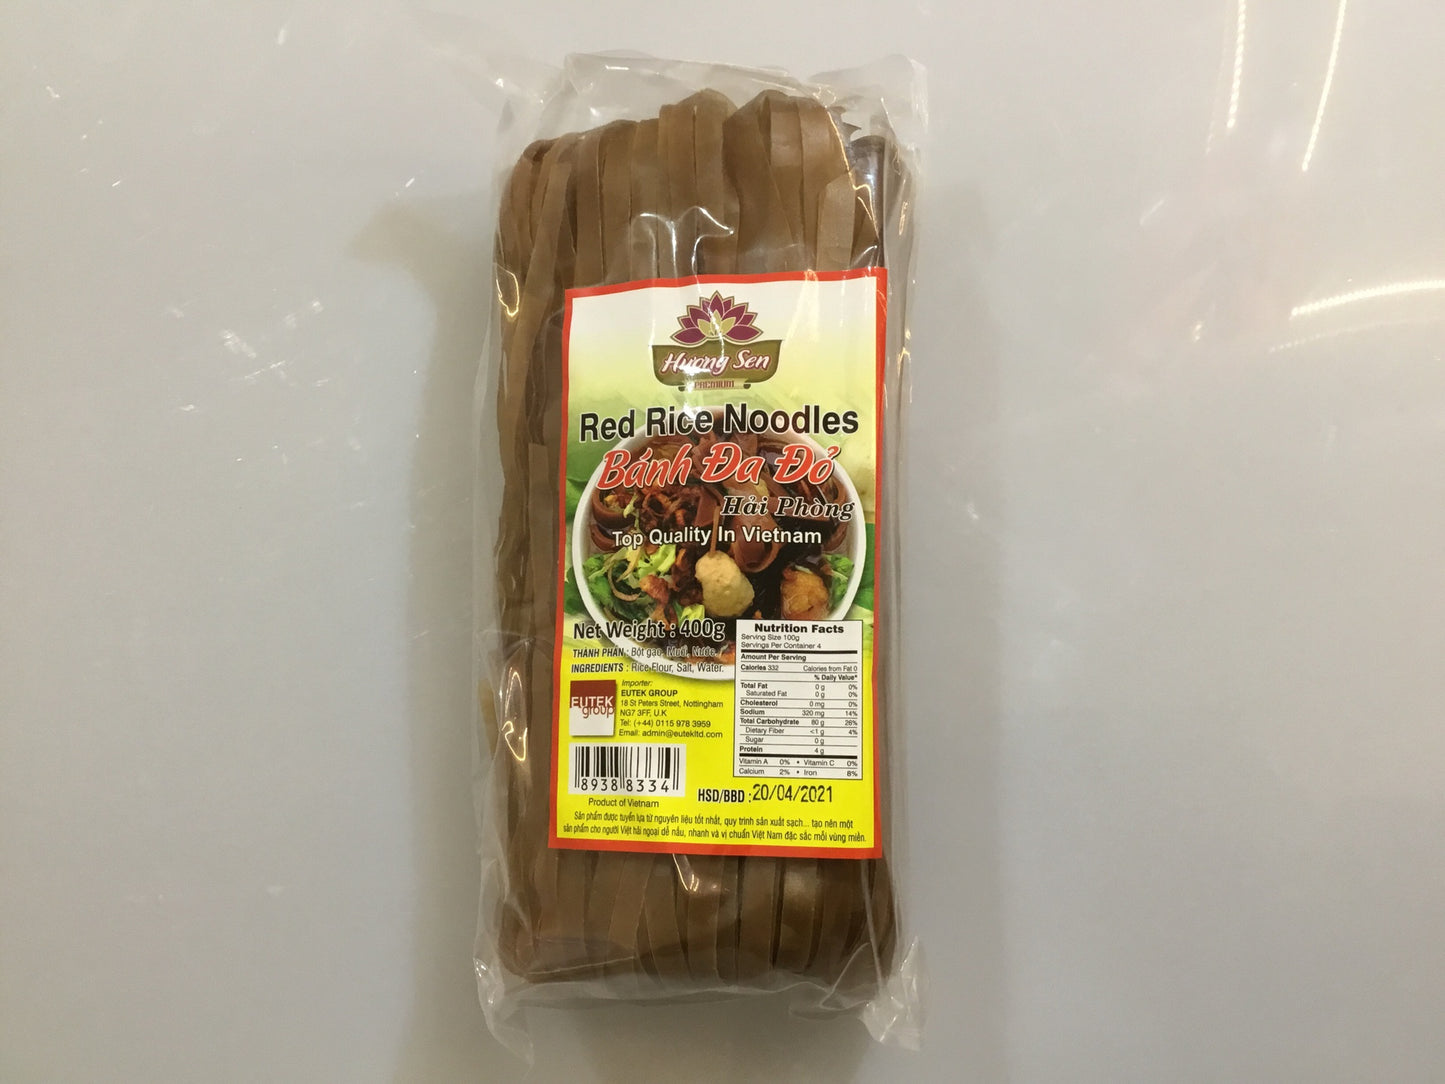 Huong Sen Red Rice Noodles Banh Da Do 400g x 1